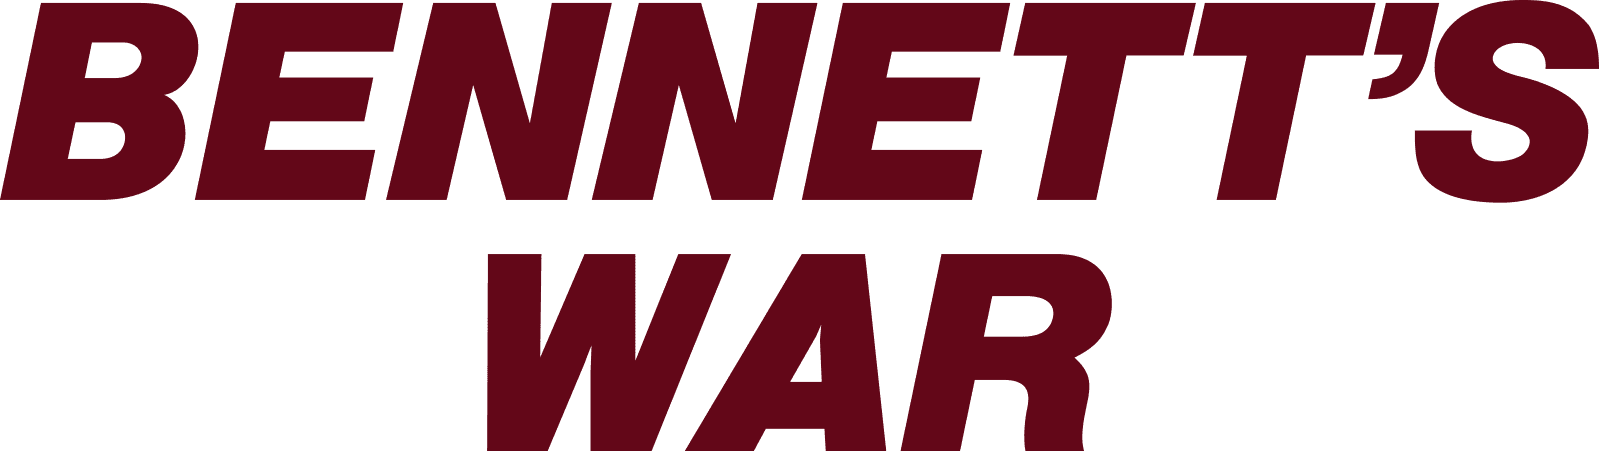 Bennett's War logo